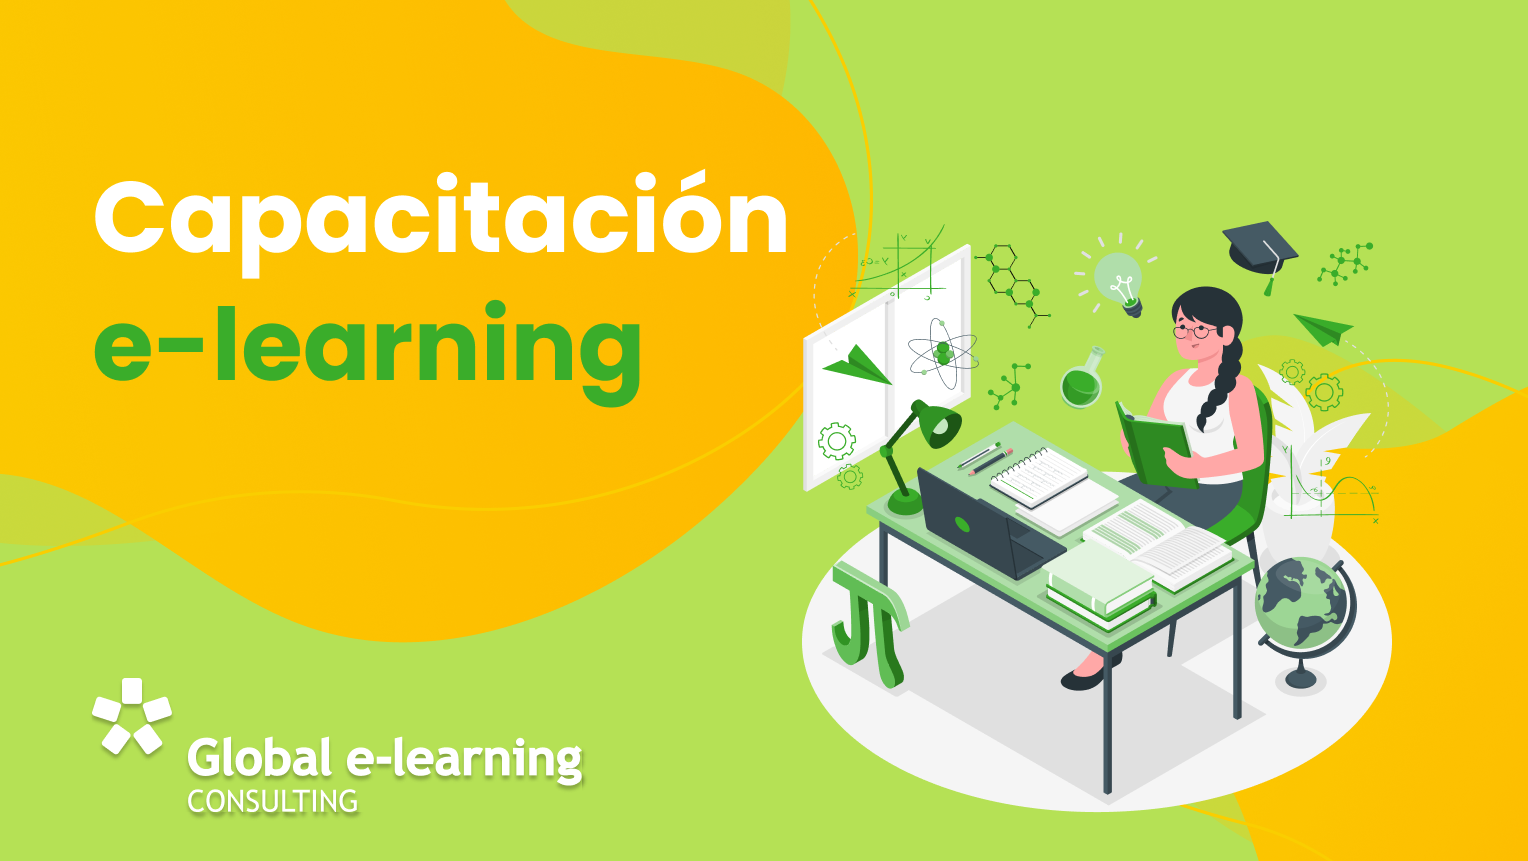 Capacitacion e-learning